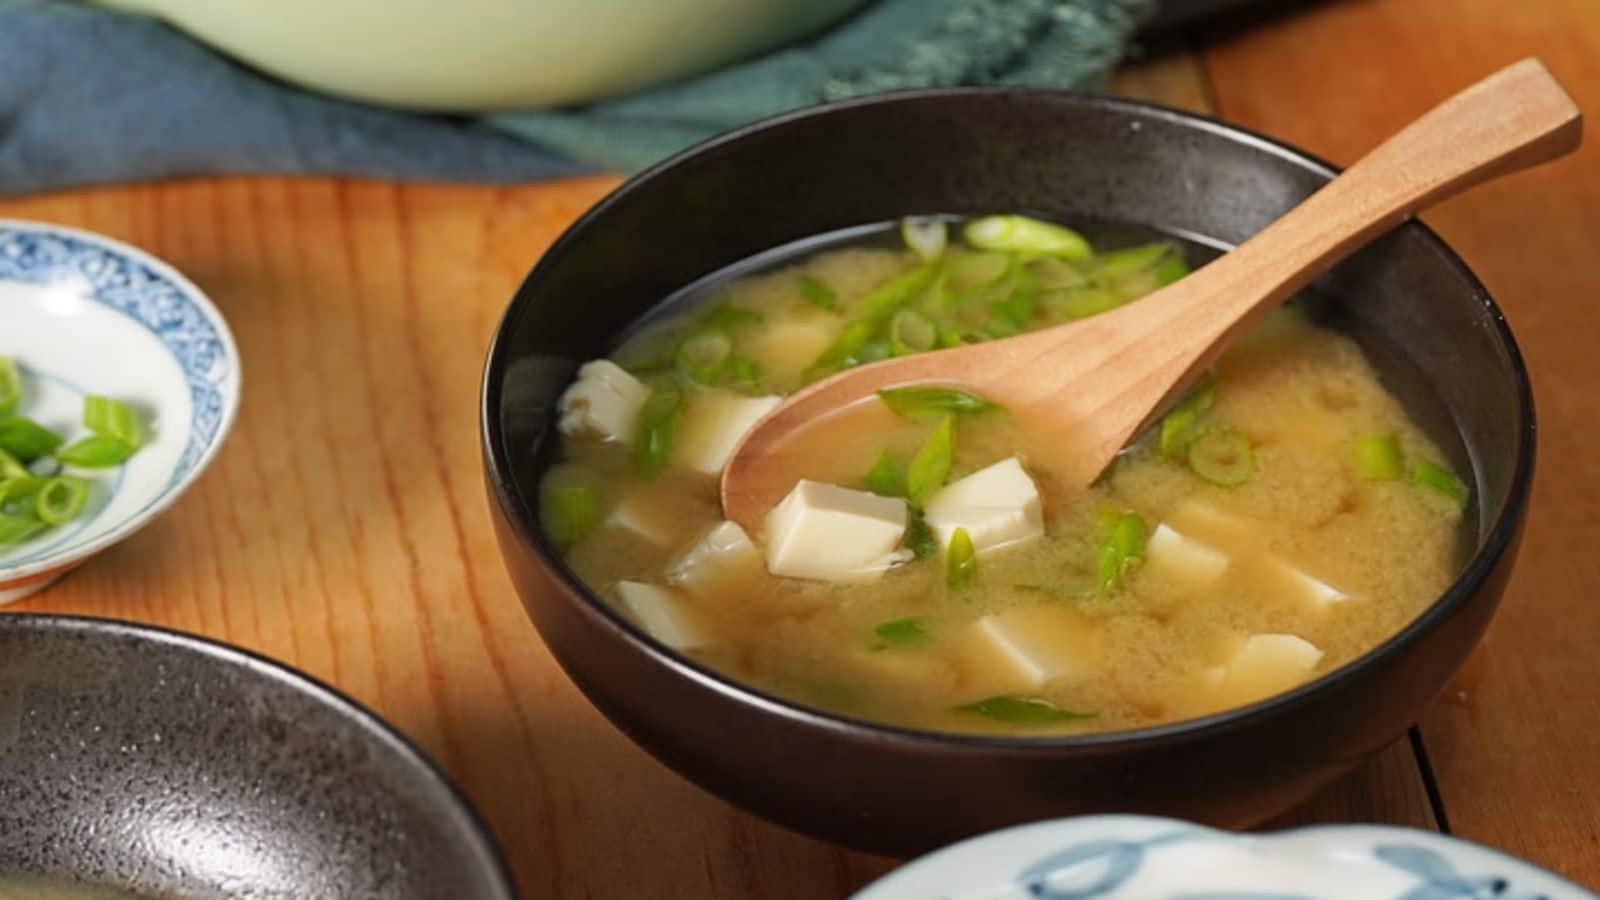 Recipe-o'-clock: Make this vegetarian miso soup at home